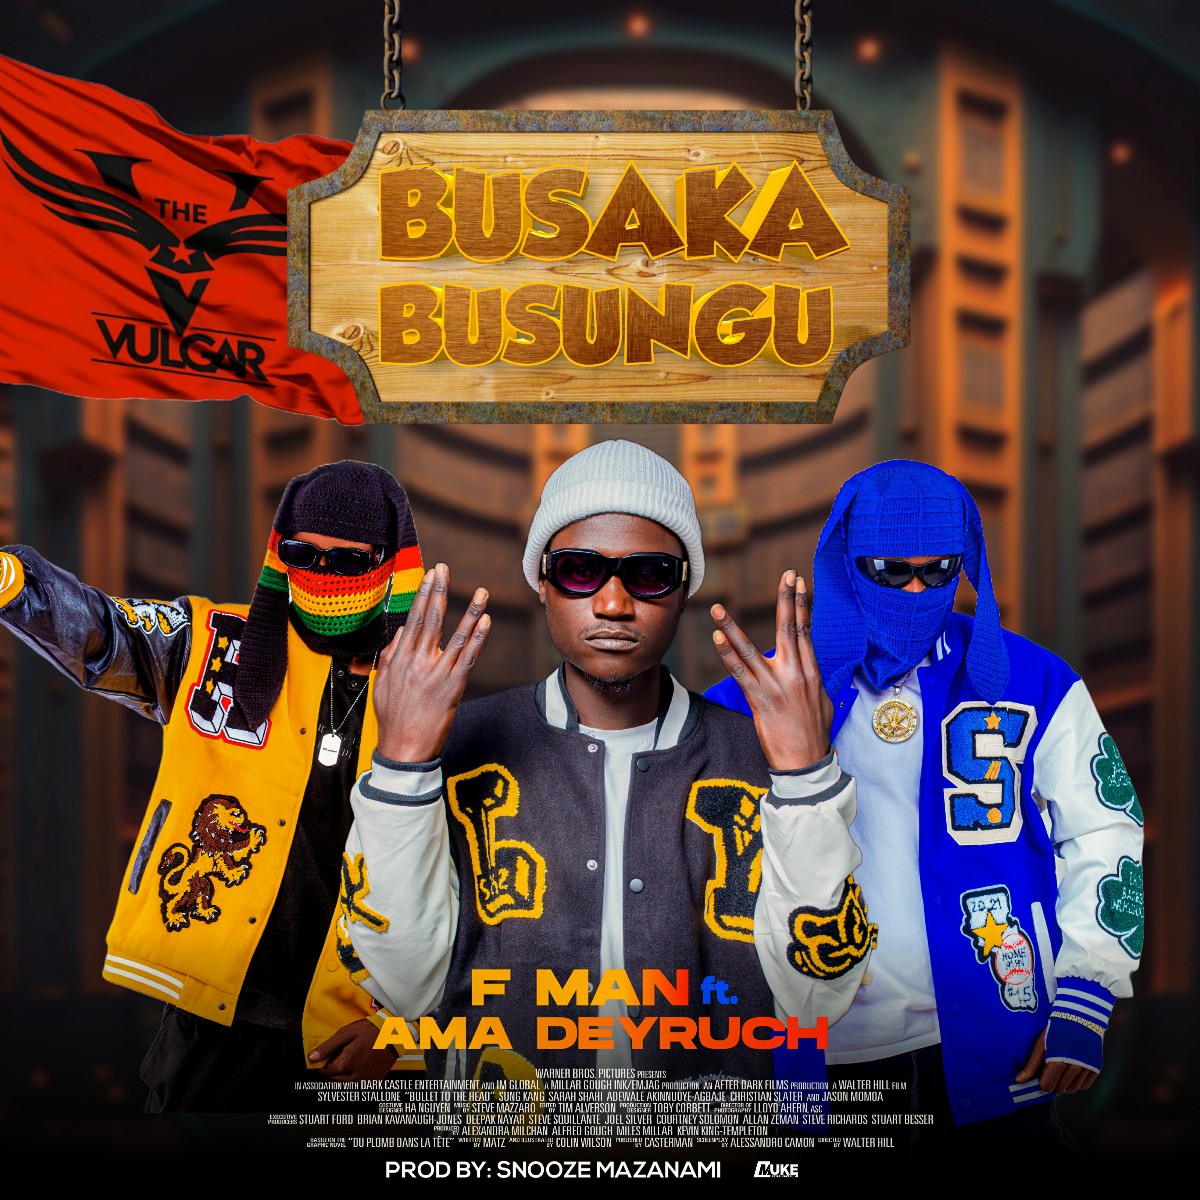 F Man ft. Ama Deyruch - Busaka Busungu